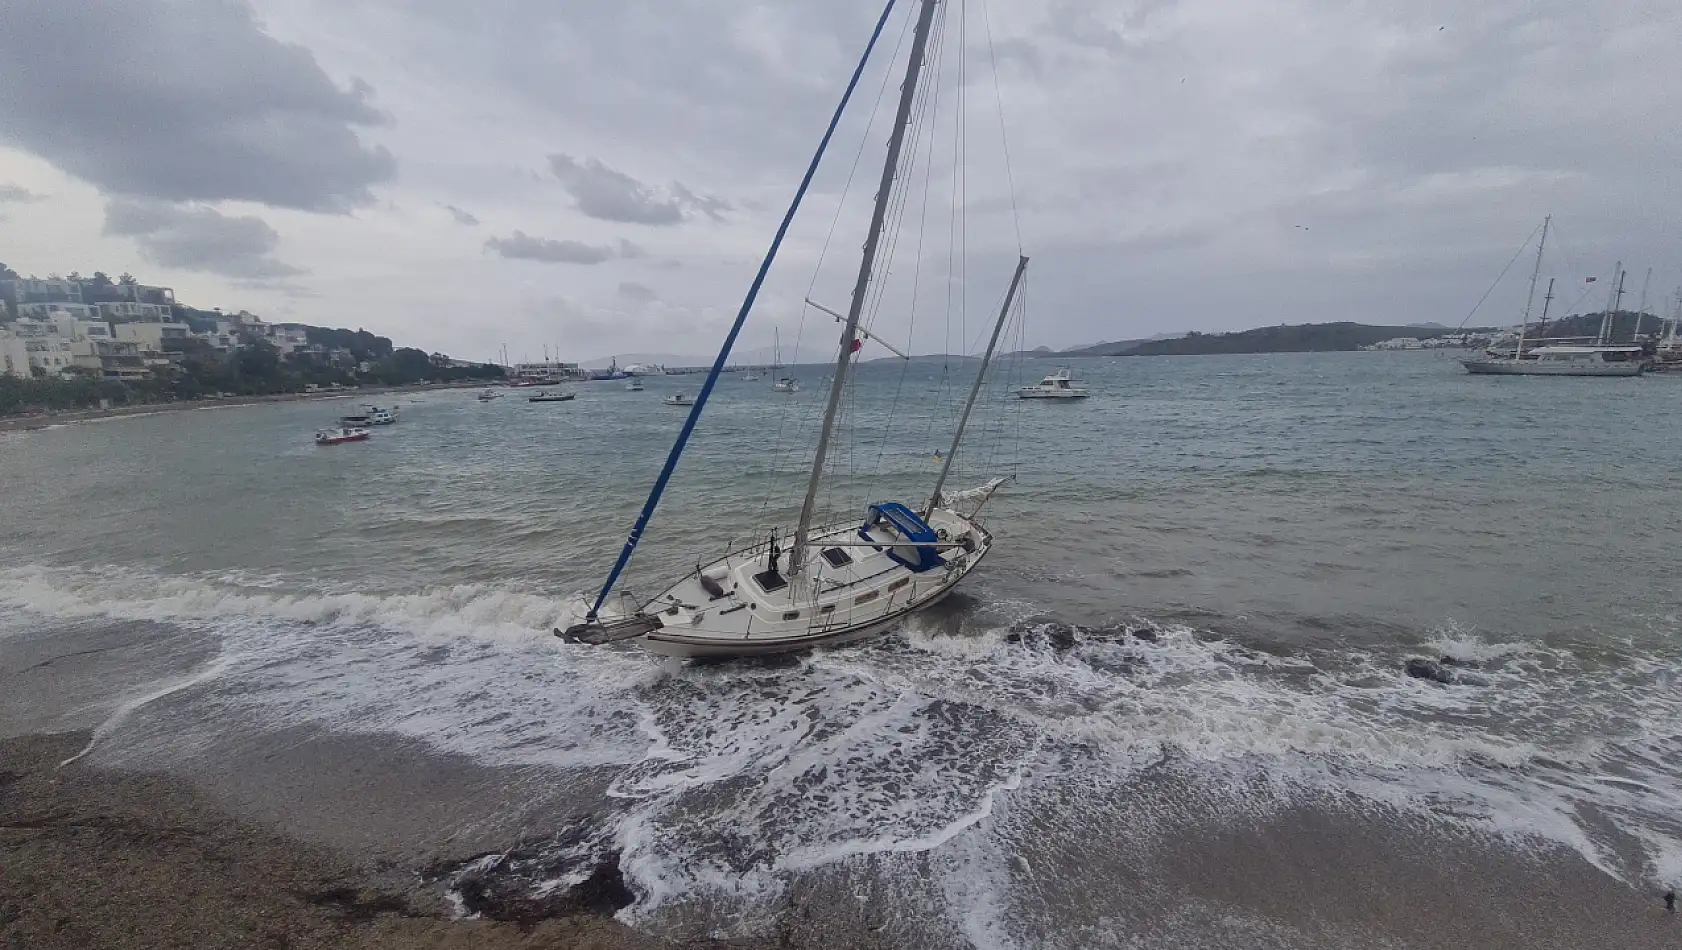 Kuvvetli rüzgar nedeniyle bir yelkenli karaya sürüklendi